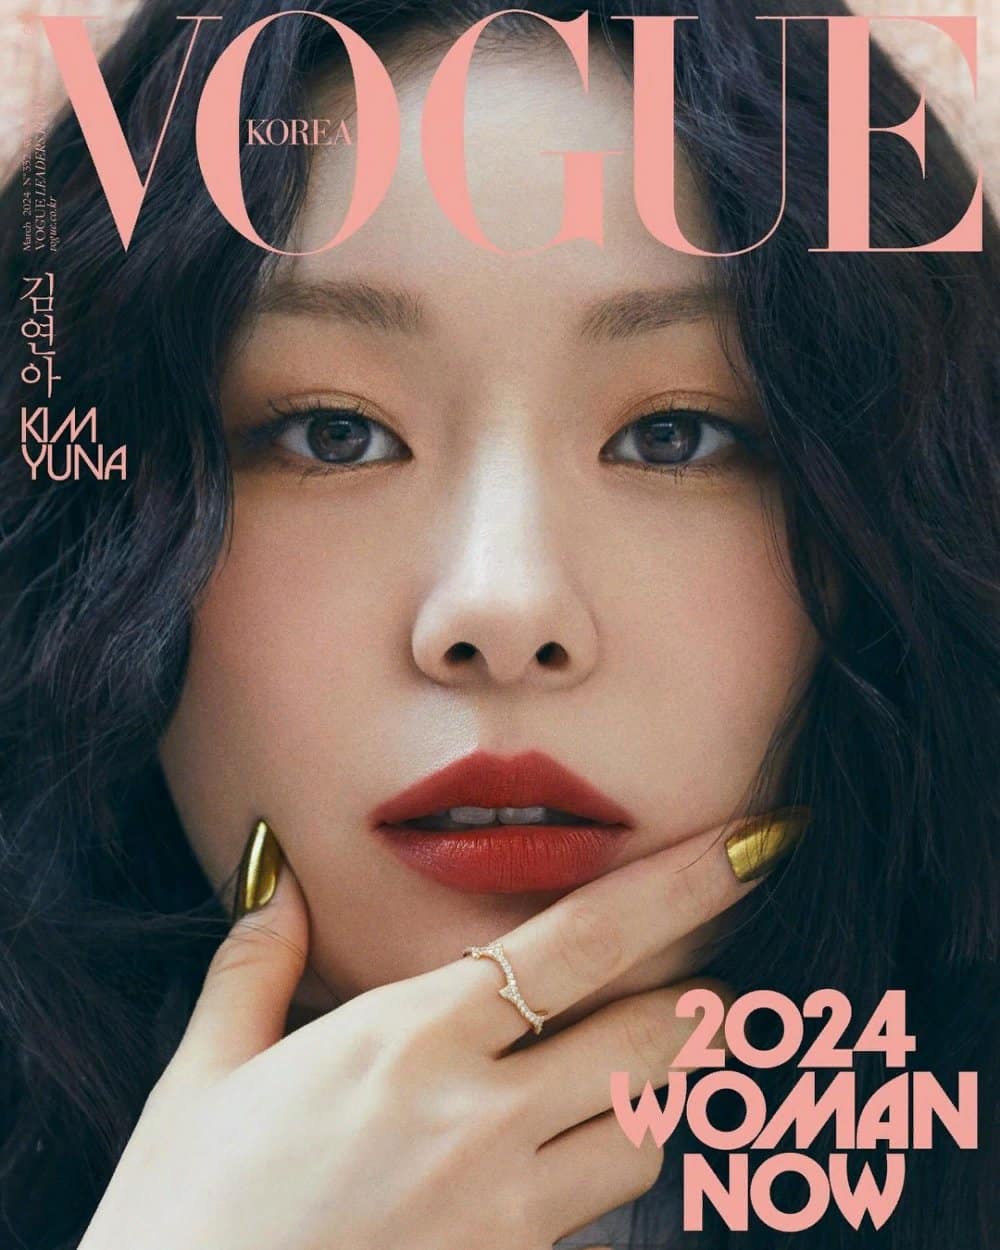 Журнал "Vogue Korea" представил 24 потрясающих женщины для обложек своего мартовского выпуска